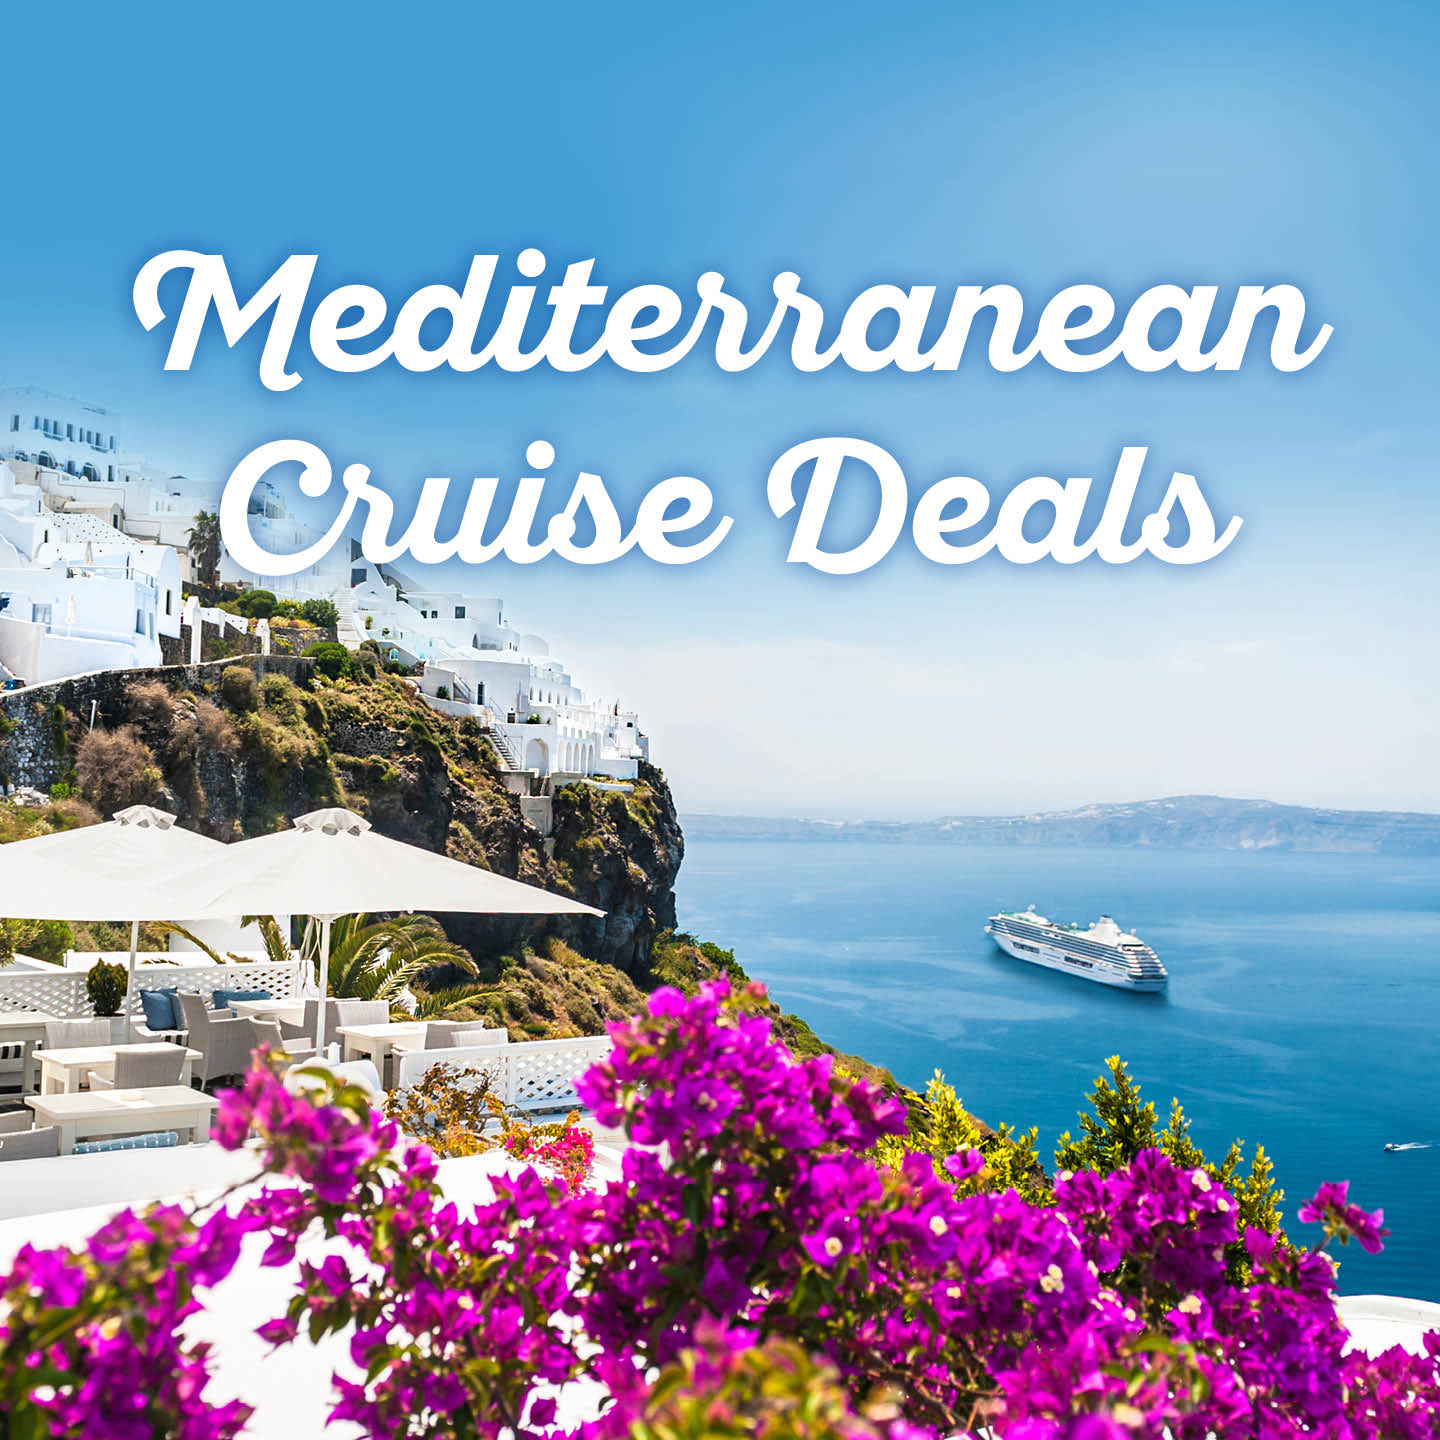 mediterranean-cruise-deals1-thumb.jpg